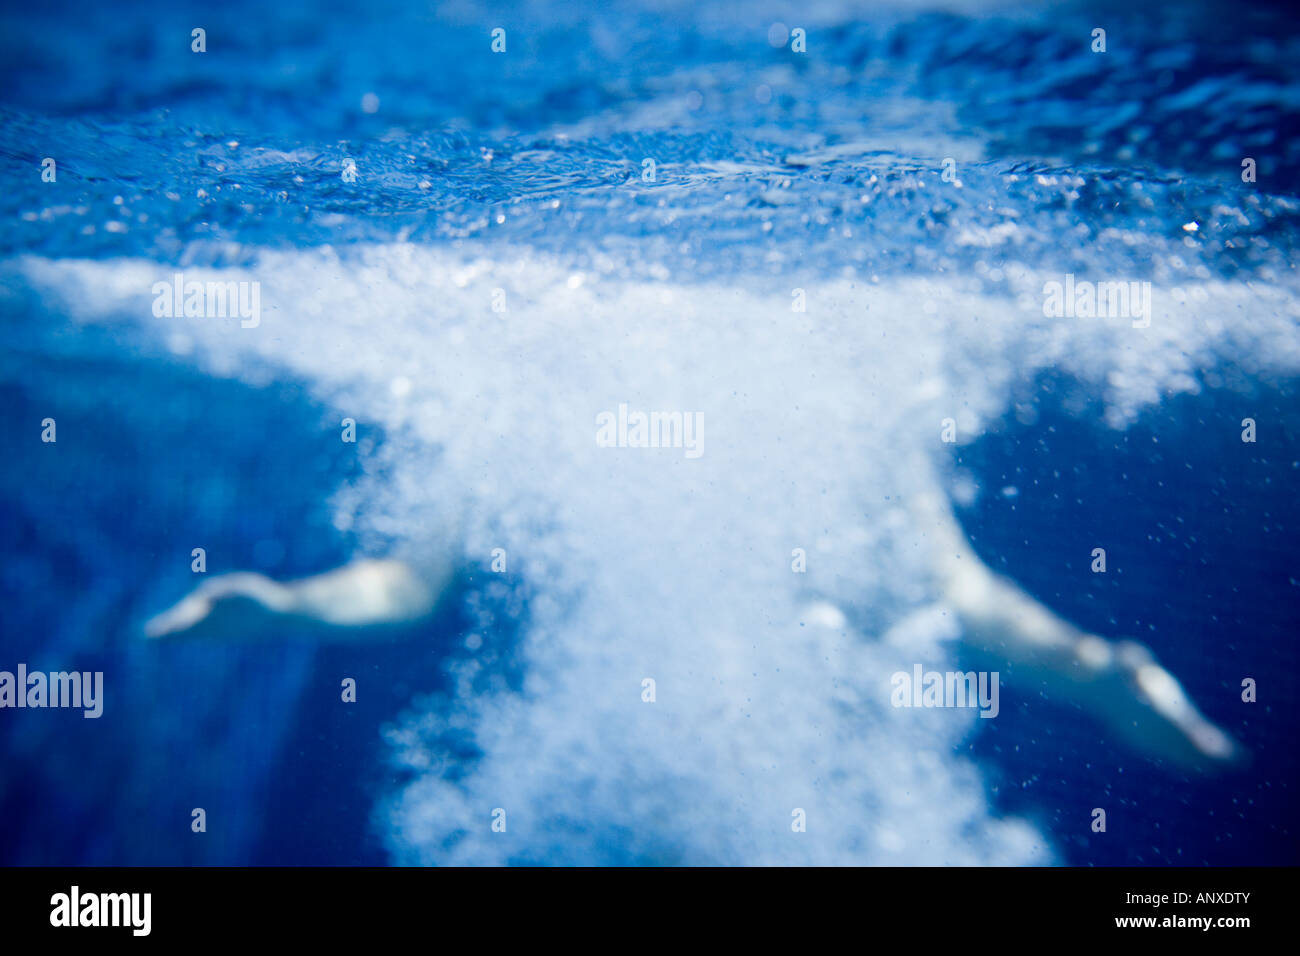 Tauchen in Wasser - unter Wasser geschossen Stockfoto